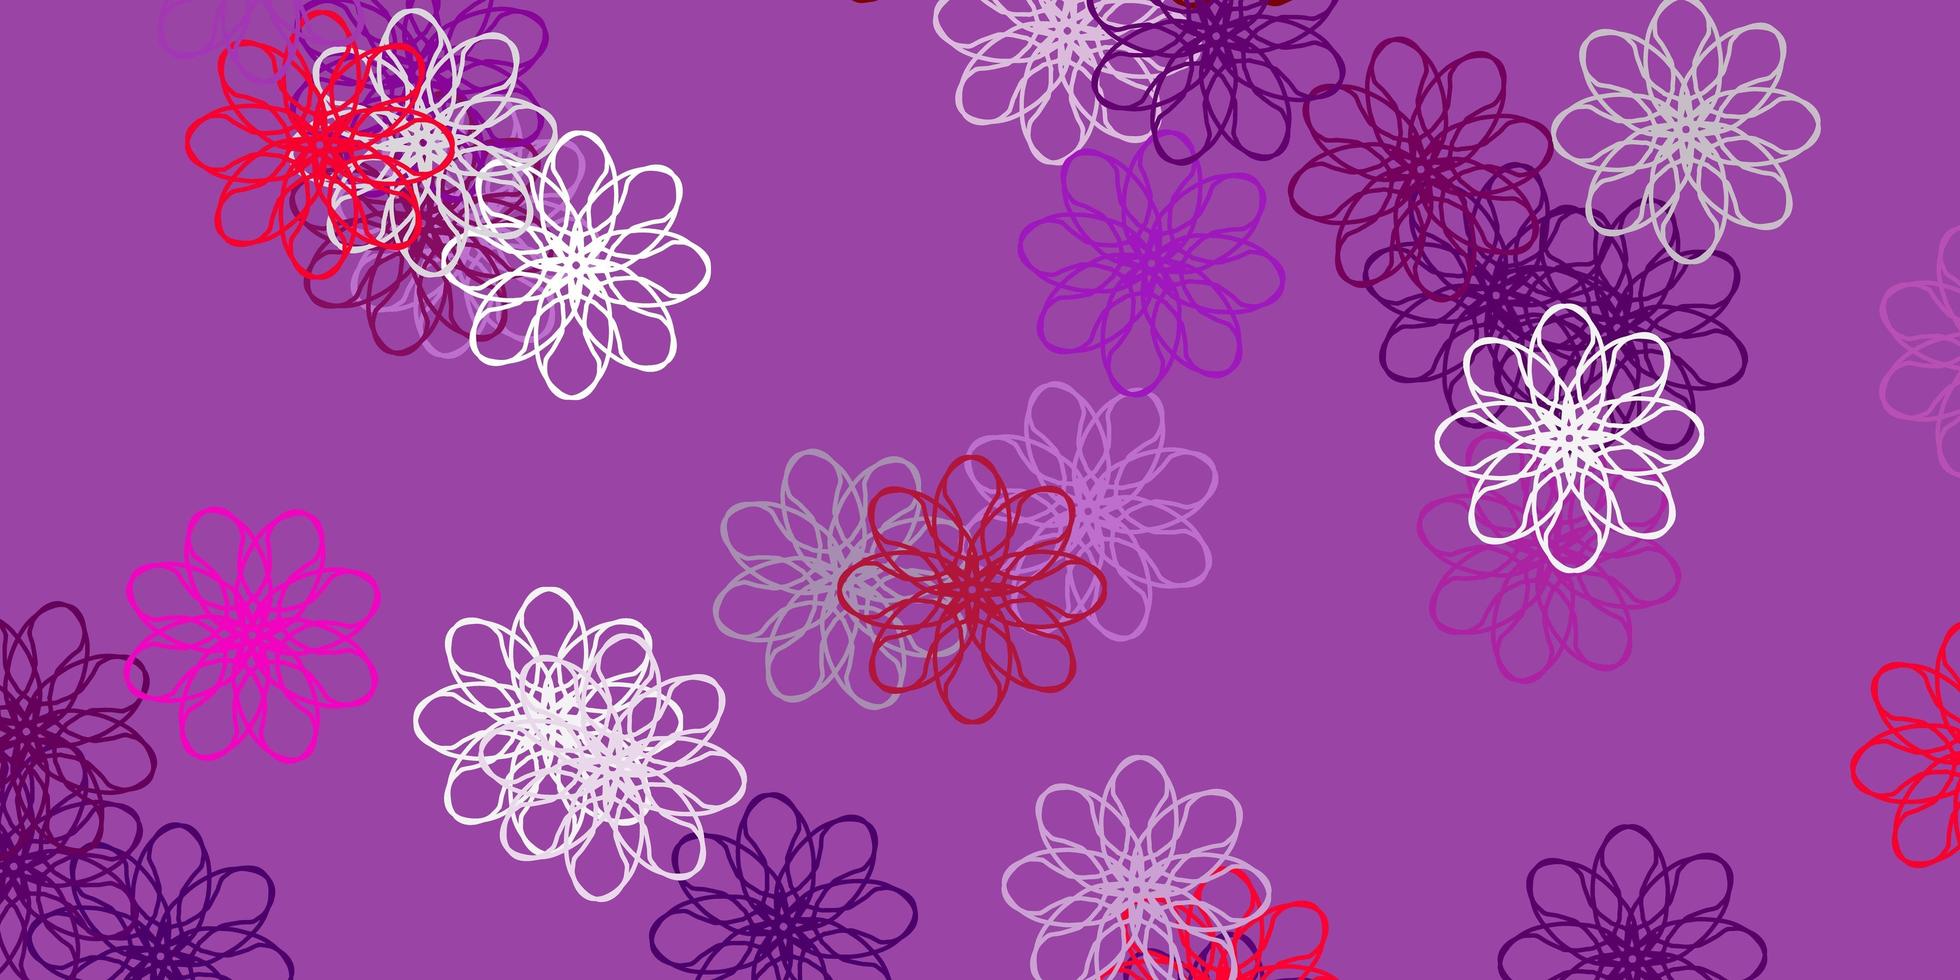 illustration naturelle de vecteur rose violet clair avec des fleurs